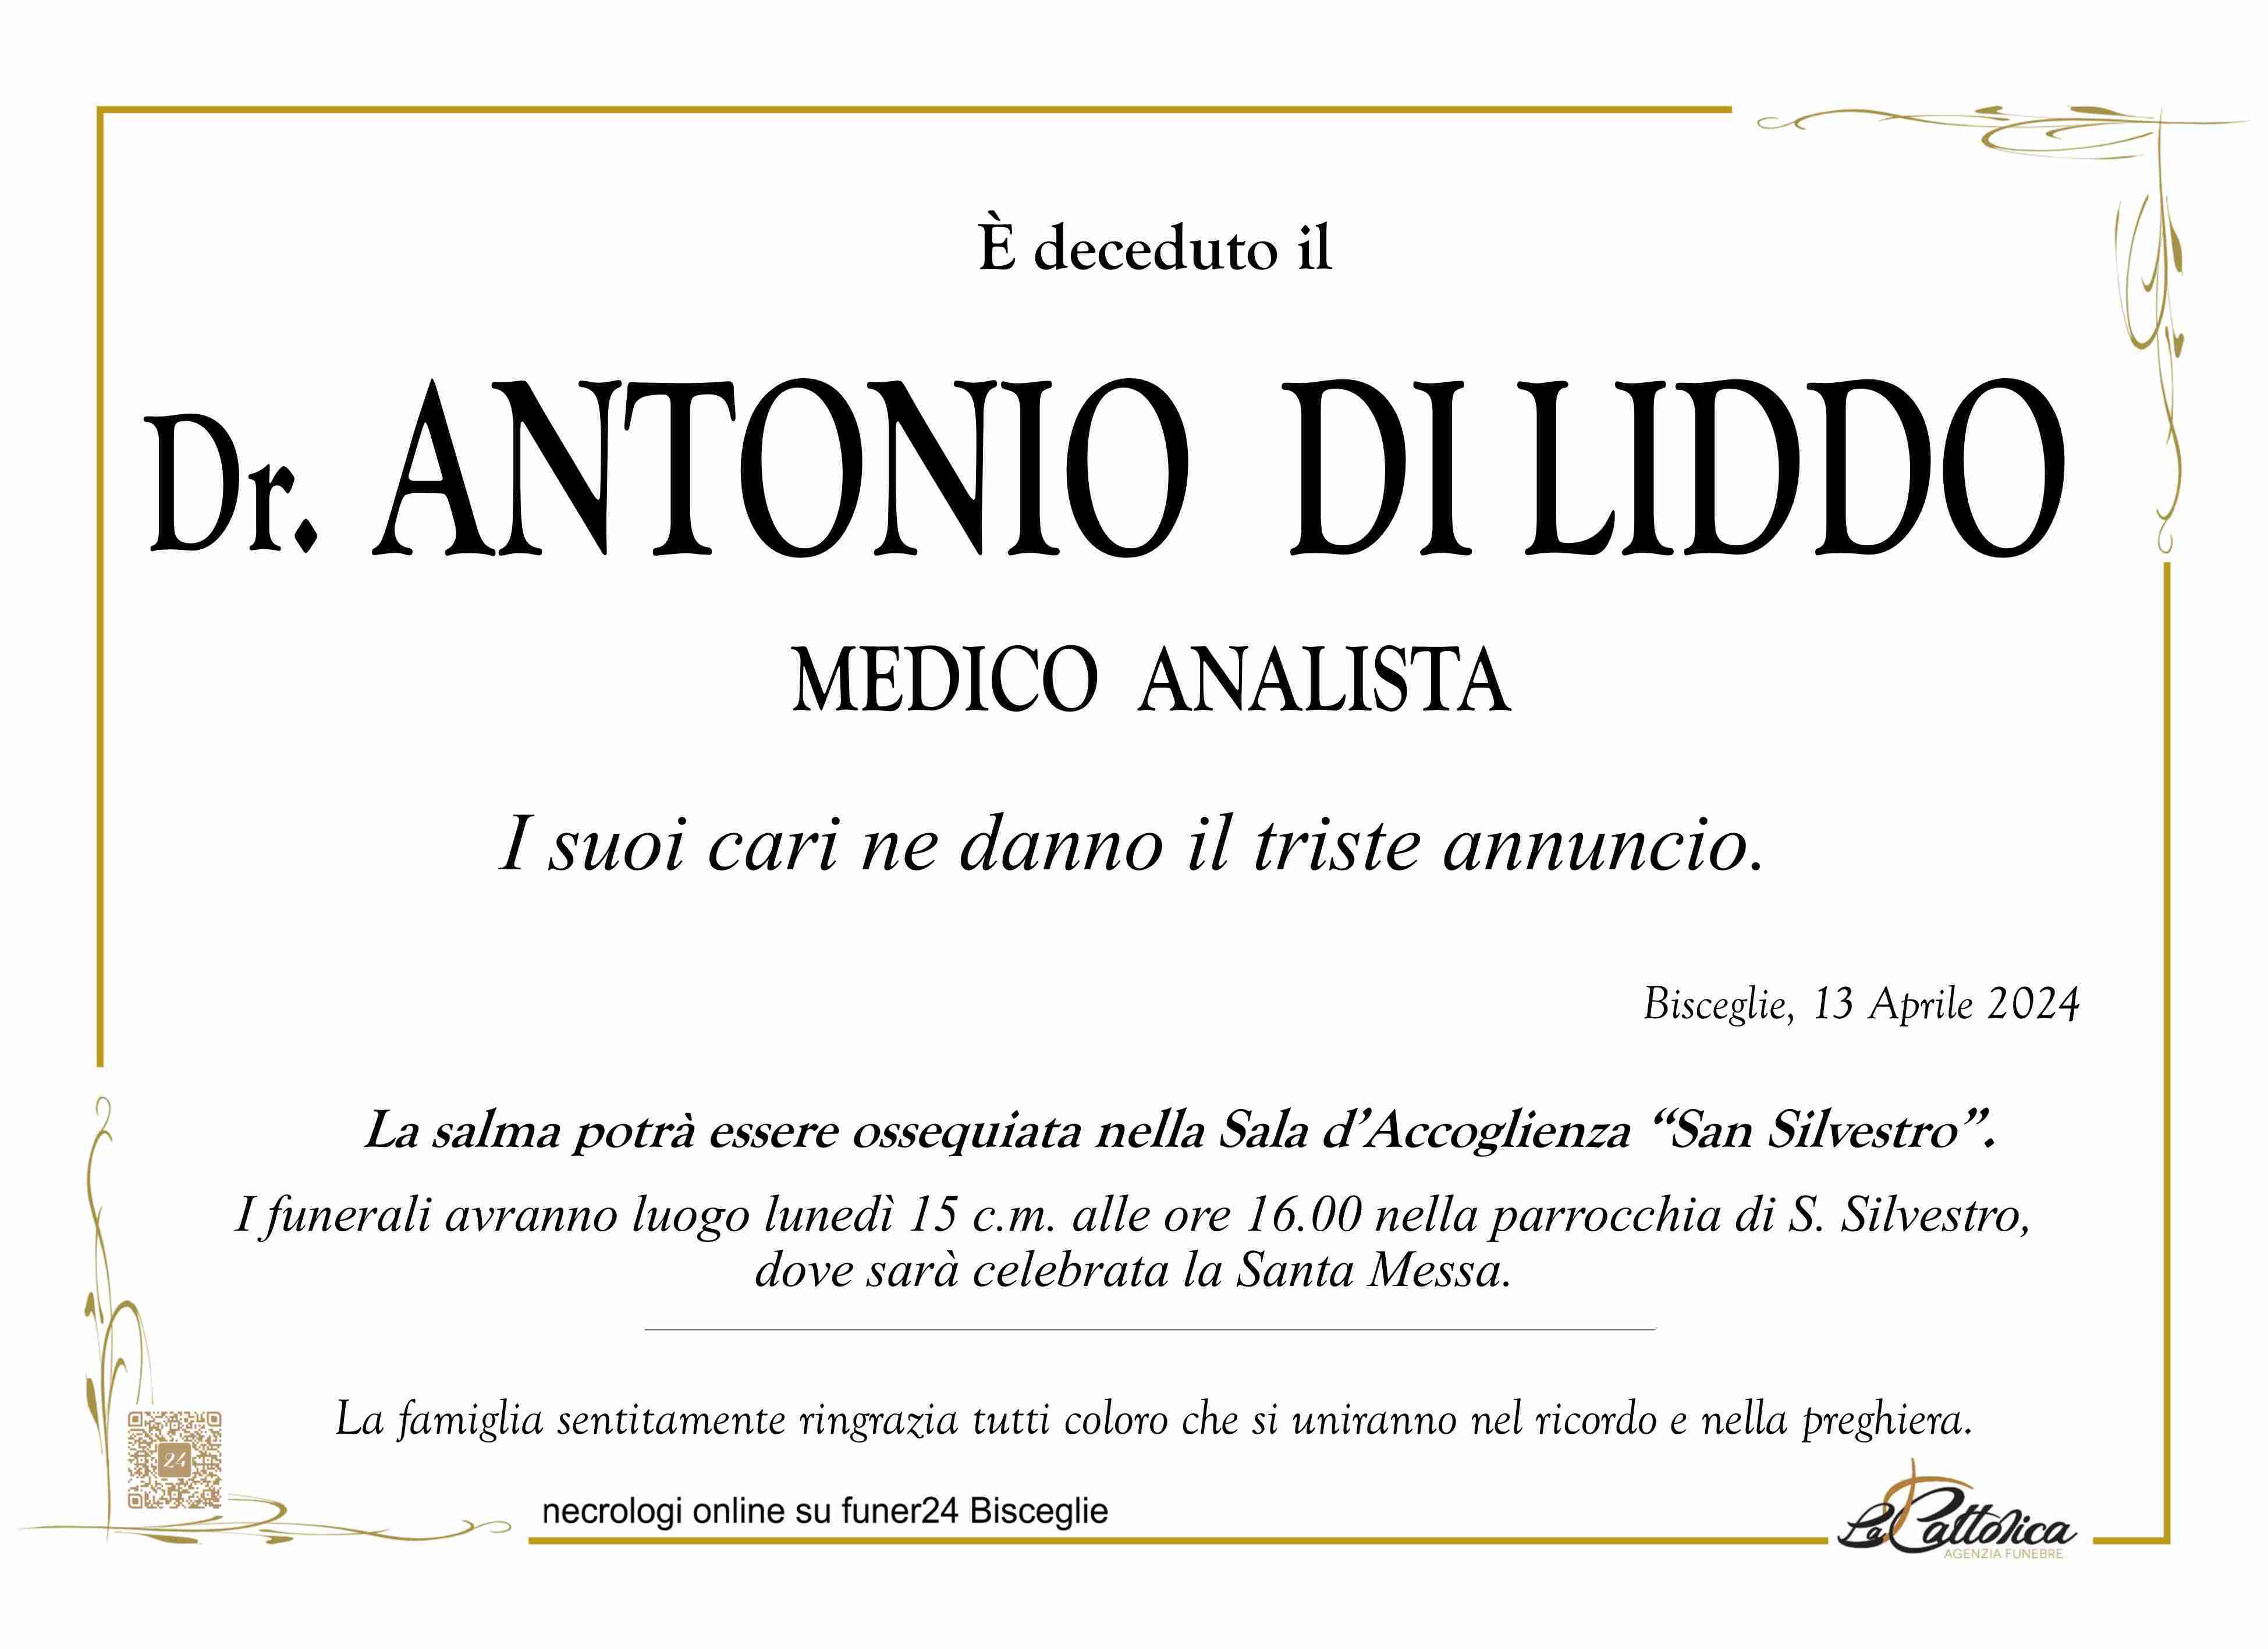 Antonio Remo Arturo Di Liddo